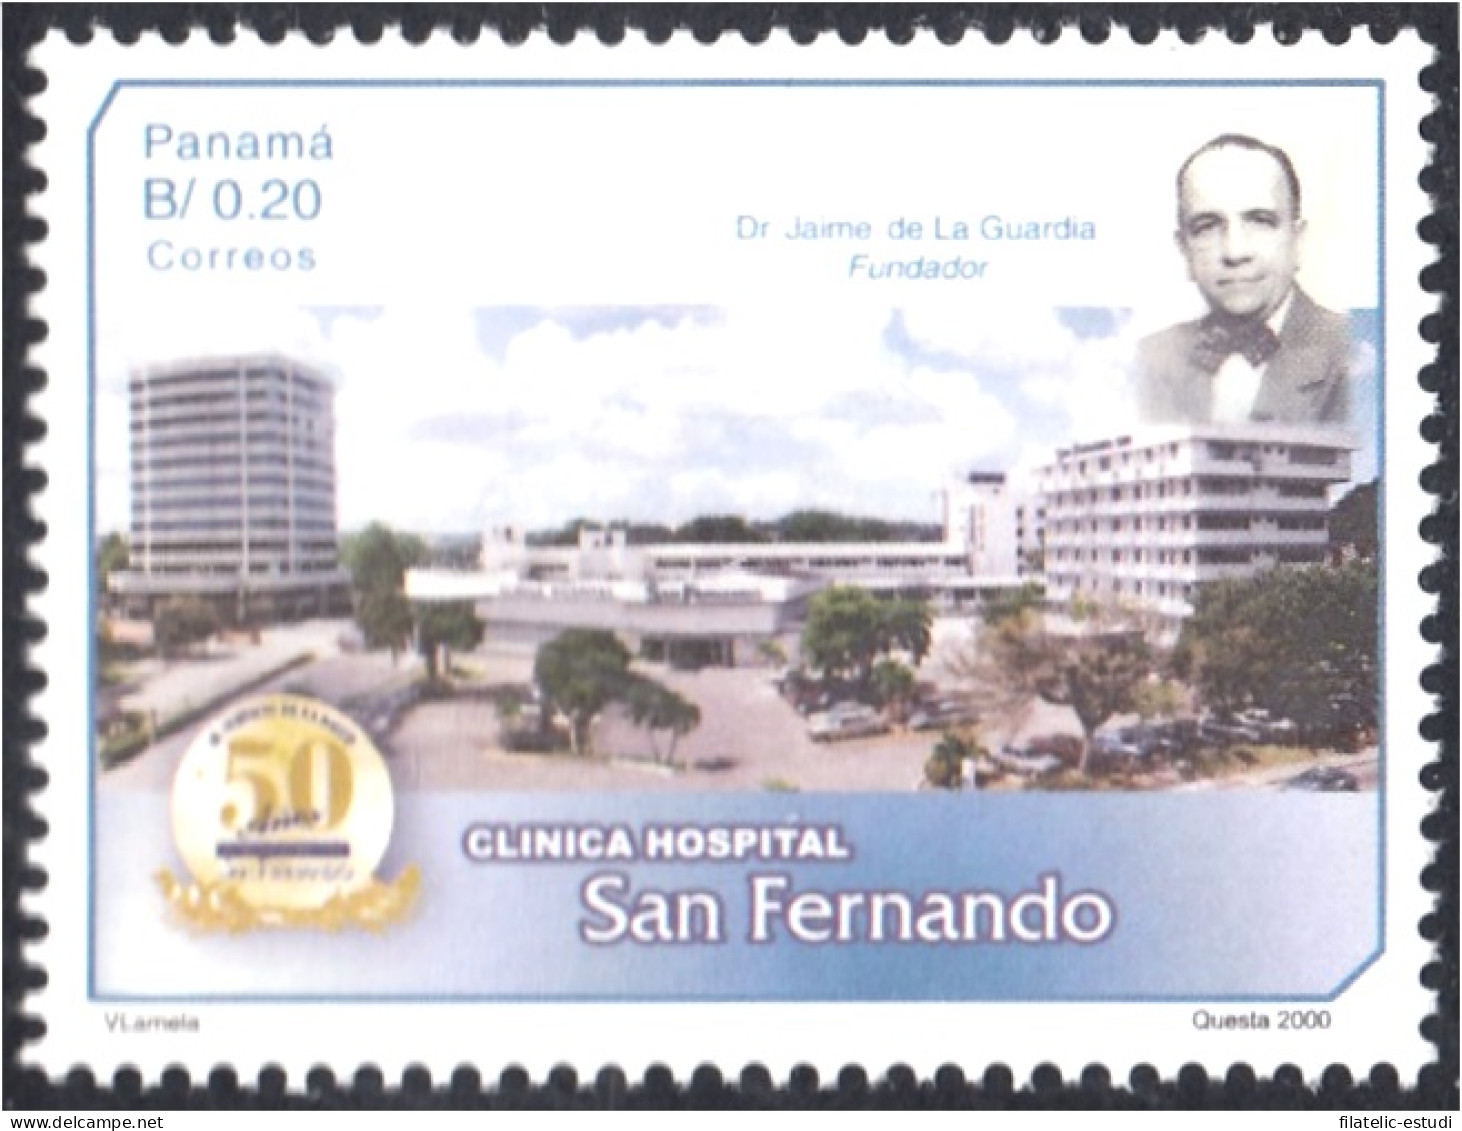 Panama 1199 2000 Clinica Hospital San Fernando MNH - Panama